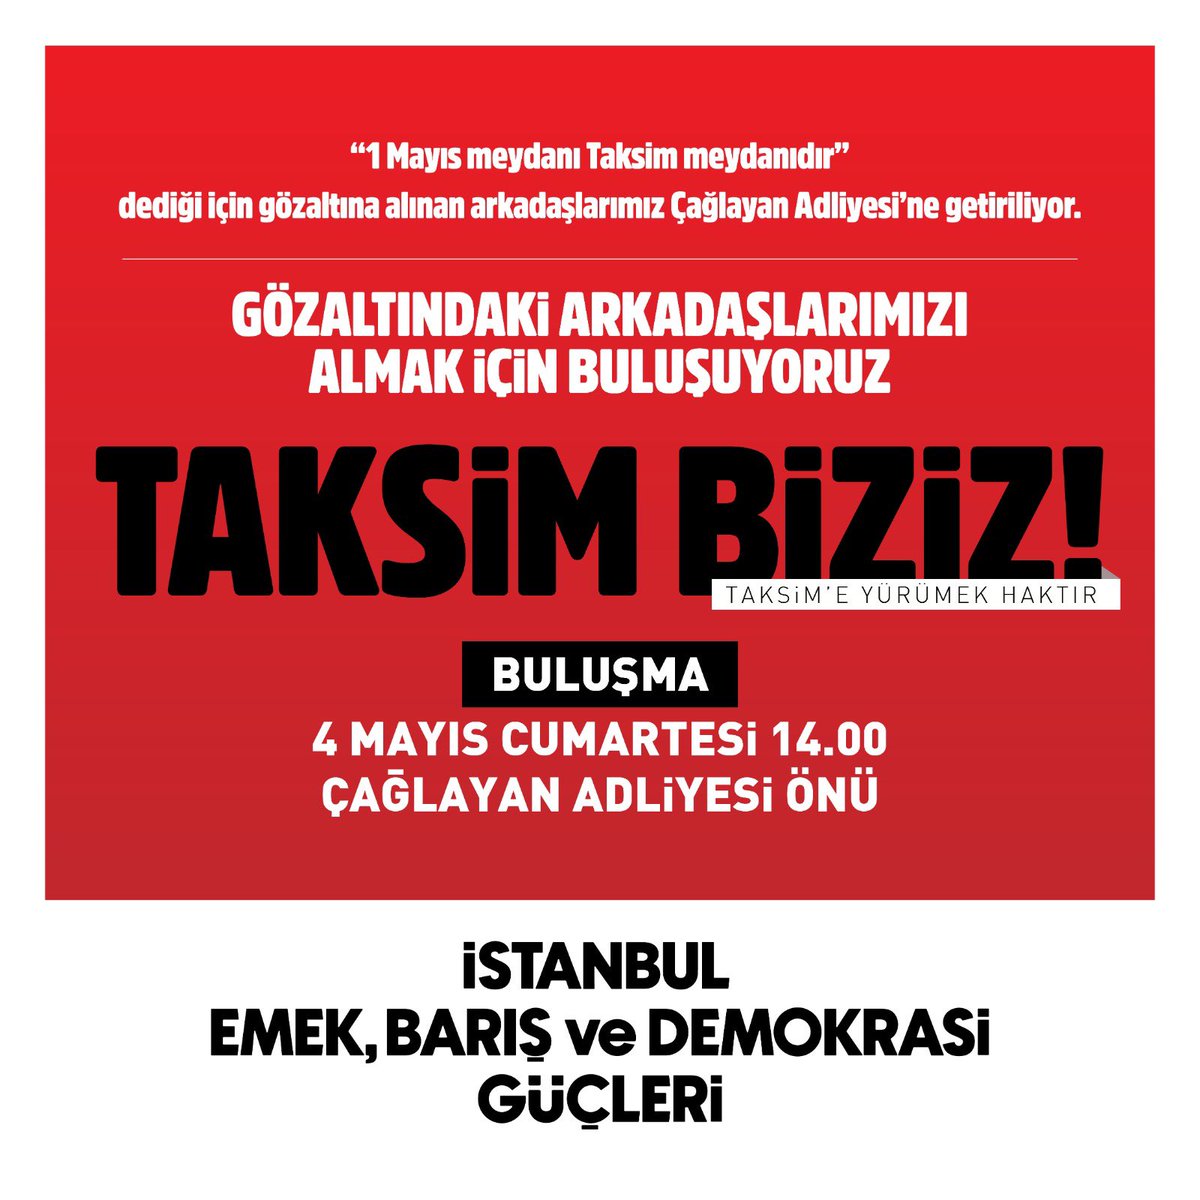 🚩 1 Mayıs’ta Taksim’e yürüdüğü için gözaltına alınan arkadaşlarımızı almak için buluşuyoruz!